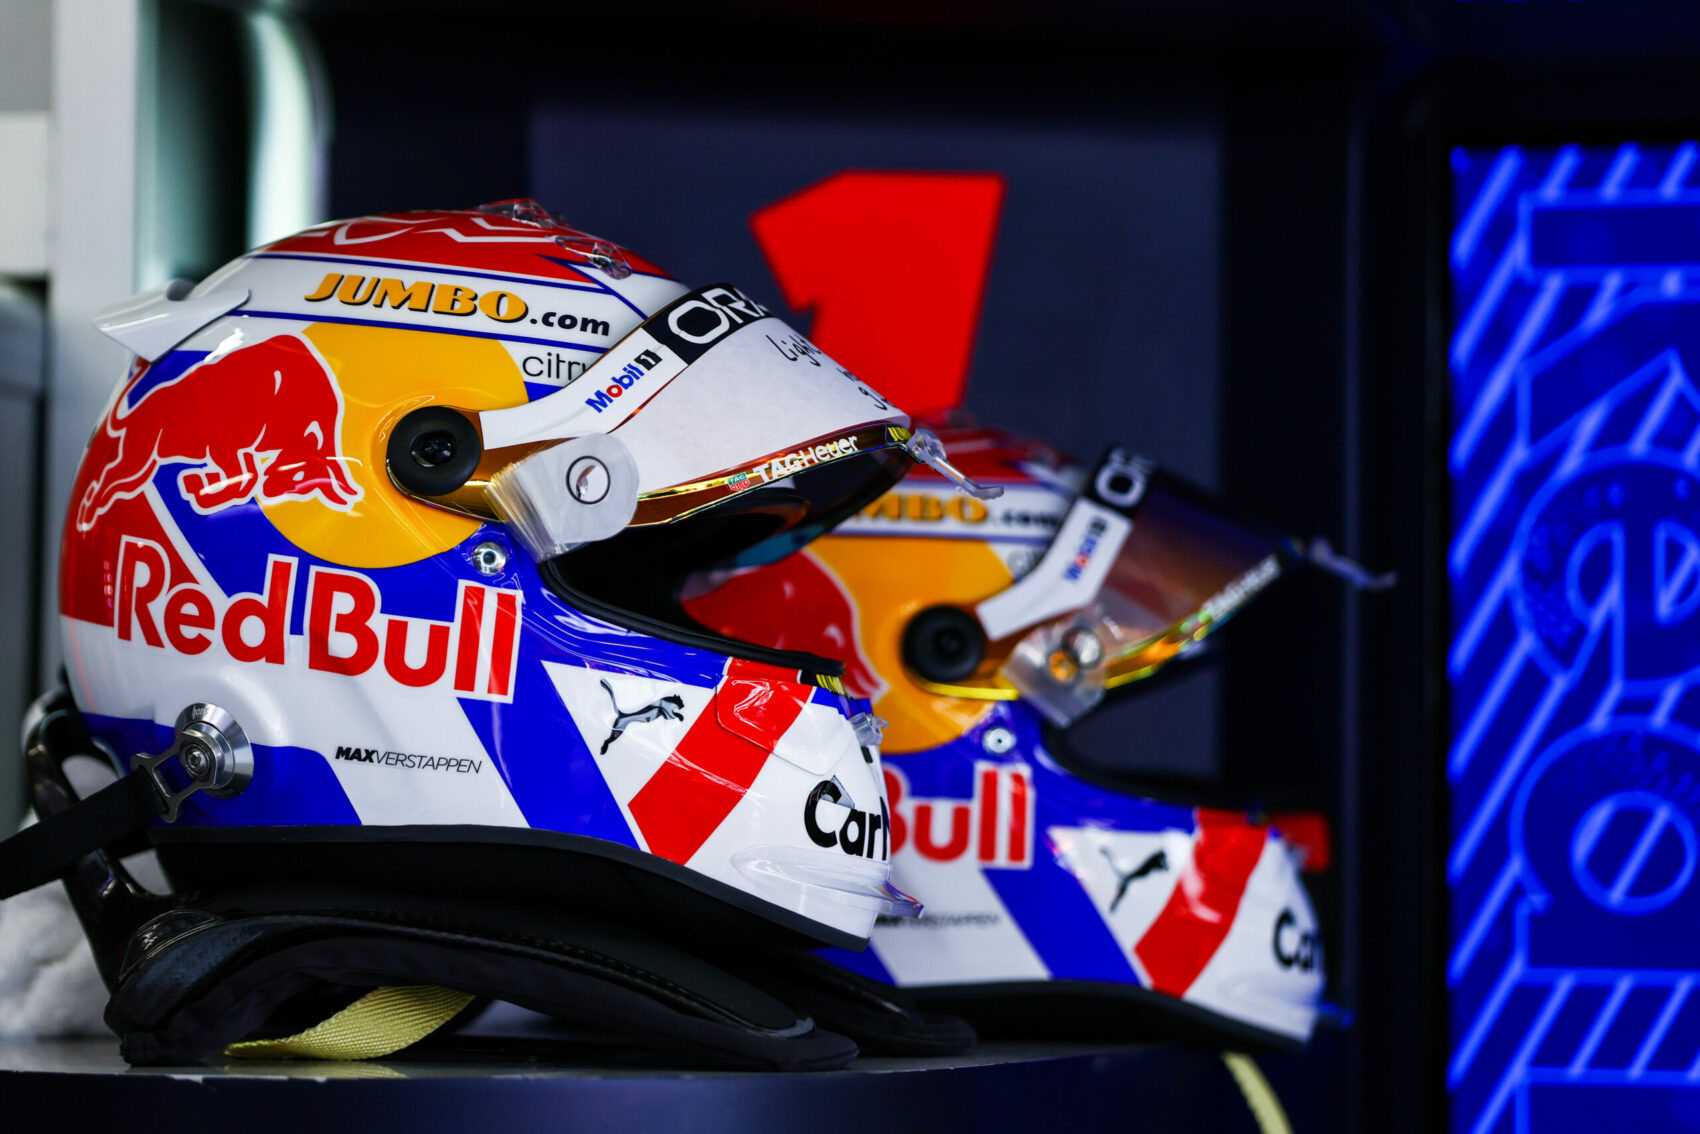 Max Verstappen, sisak, Holland Nagydíj, Red Bull Racing, Jumbo